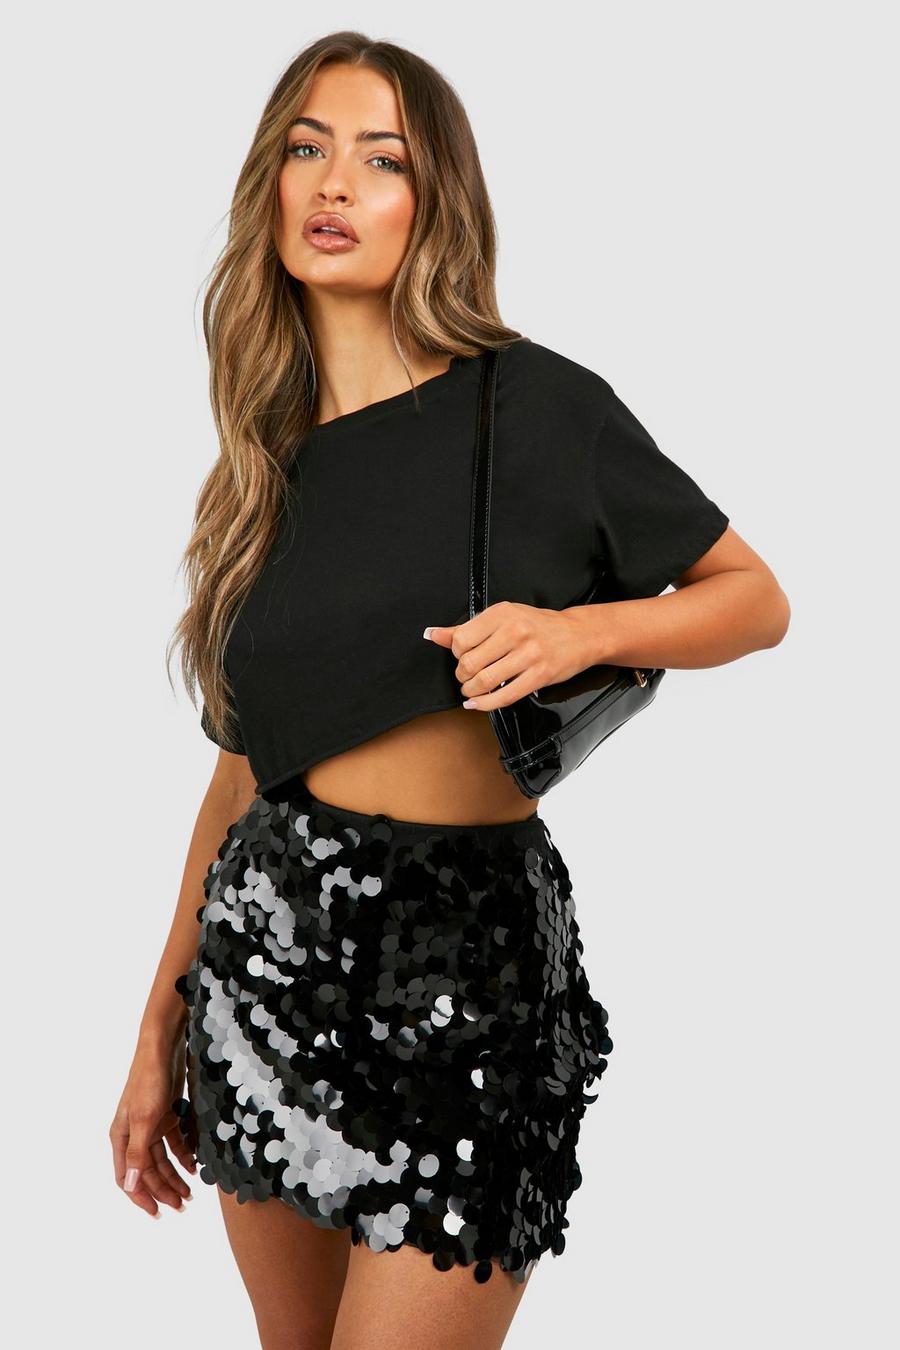 Black Disc Sequin Mini Skirt